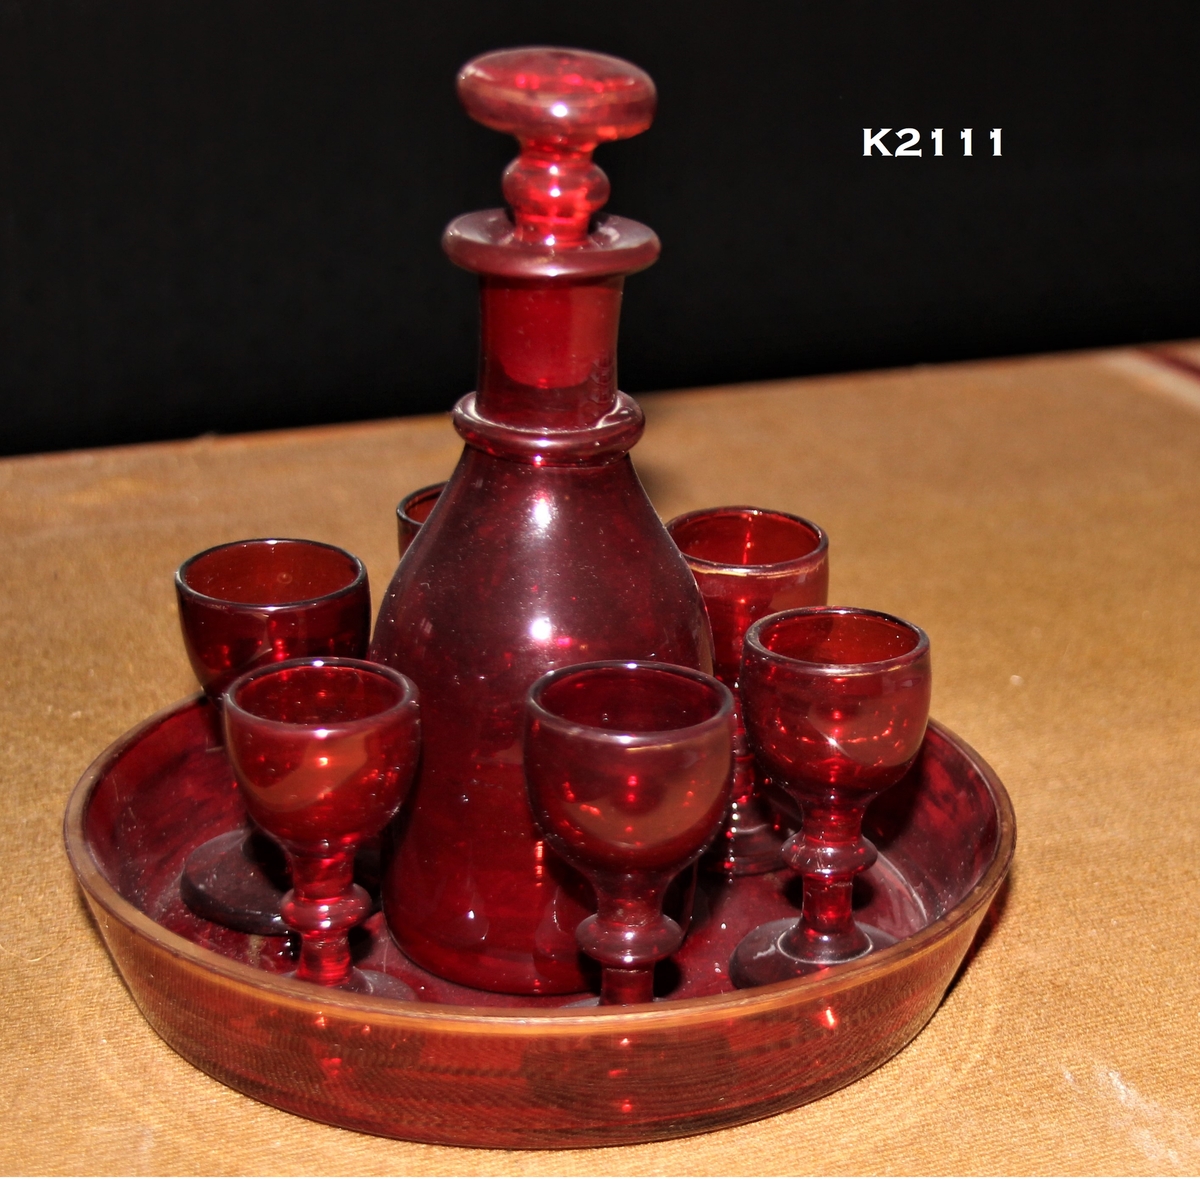 K2ll1, a—h. 
Likørkaraffel med 6 glass på brett, 1850—årene. Rubinglass, bøhmisk. 
a) Brett, sirkulært med skrå karm og forgylt kant.
b) Karaffel.
Runde skuldre, en ring om den smale hals, munningsbrem og propp. 
e-h) Glass, 6 stk. Rund fot, balusterstett, klokkeformet cupa.